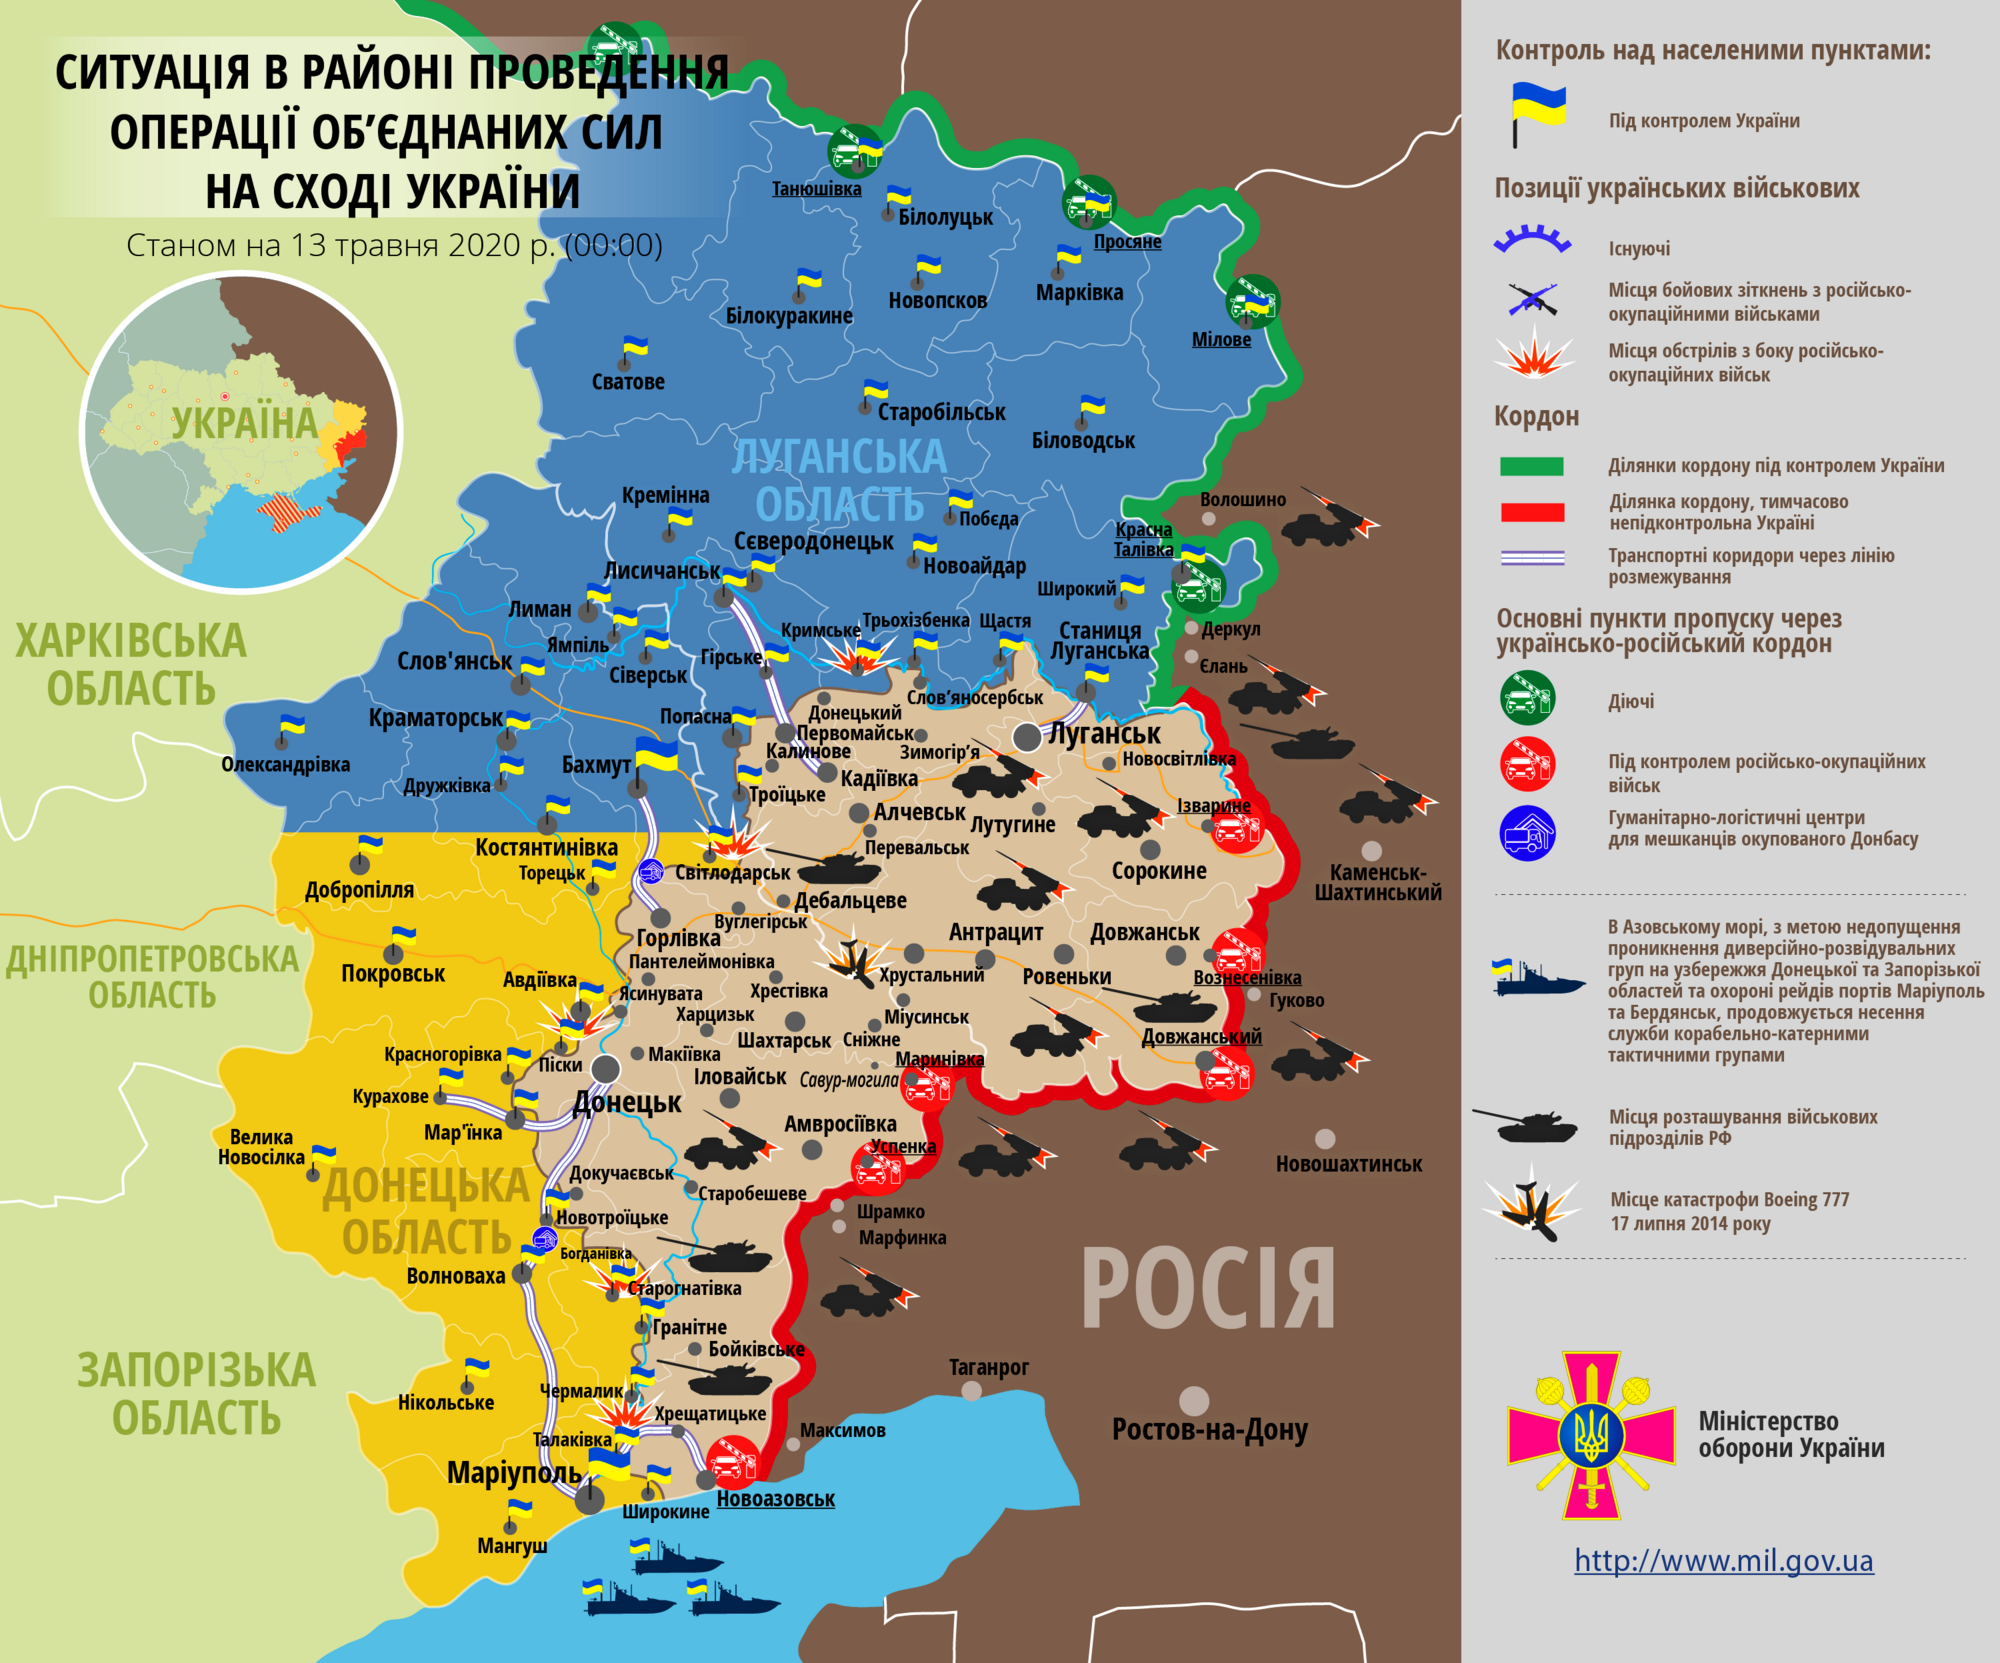 Ситуація в зоні проведення ООС на Донбасі